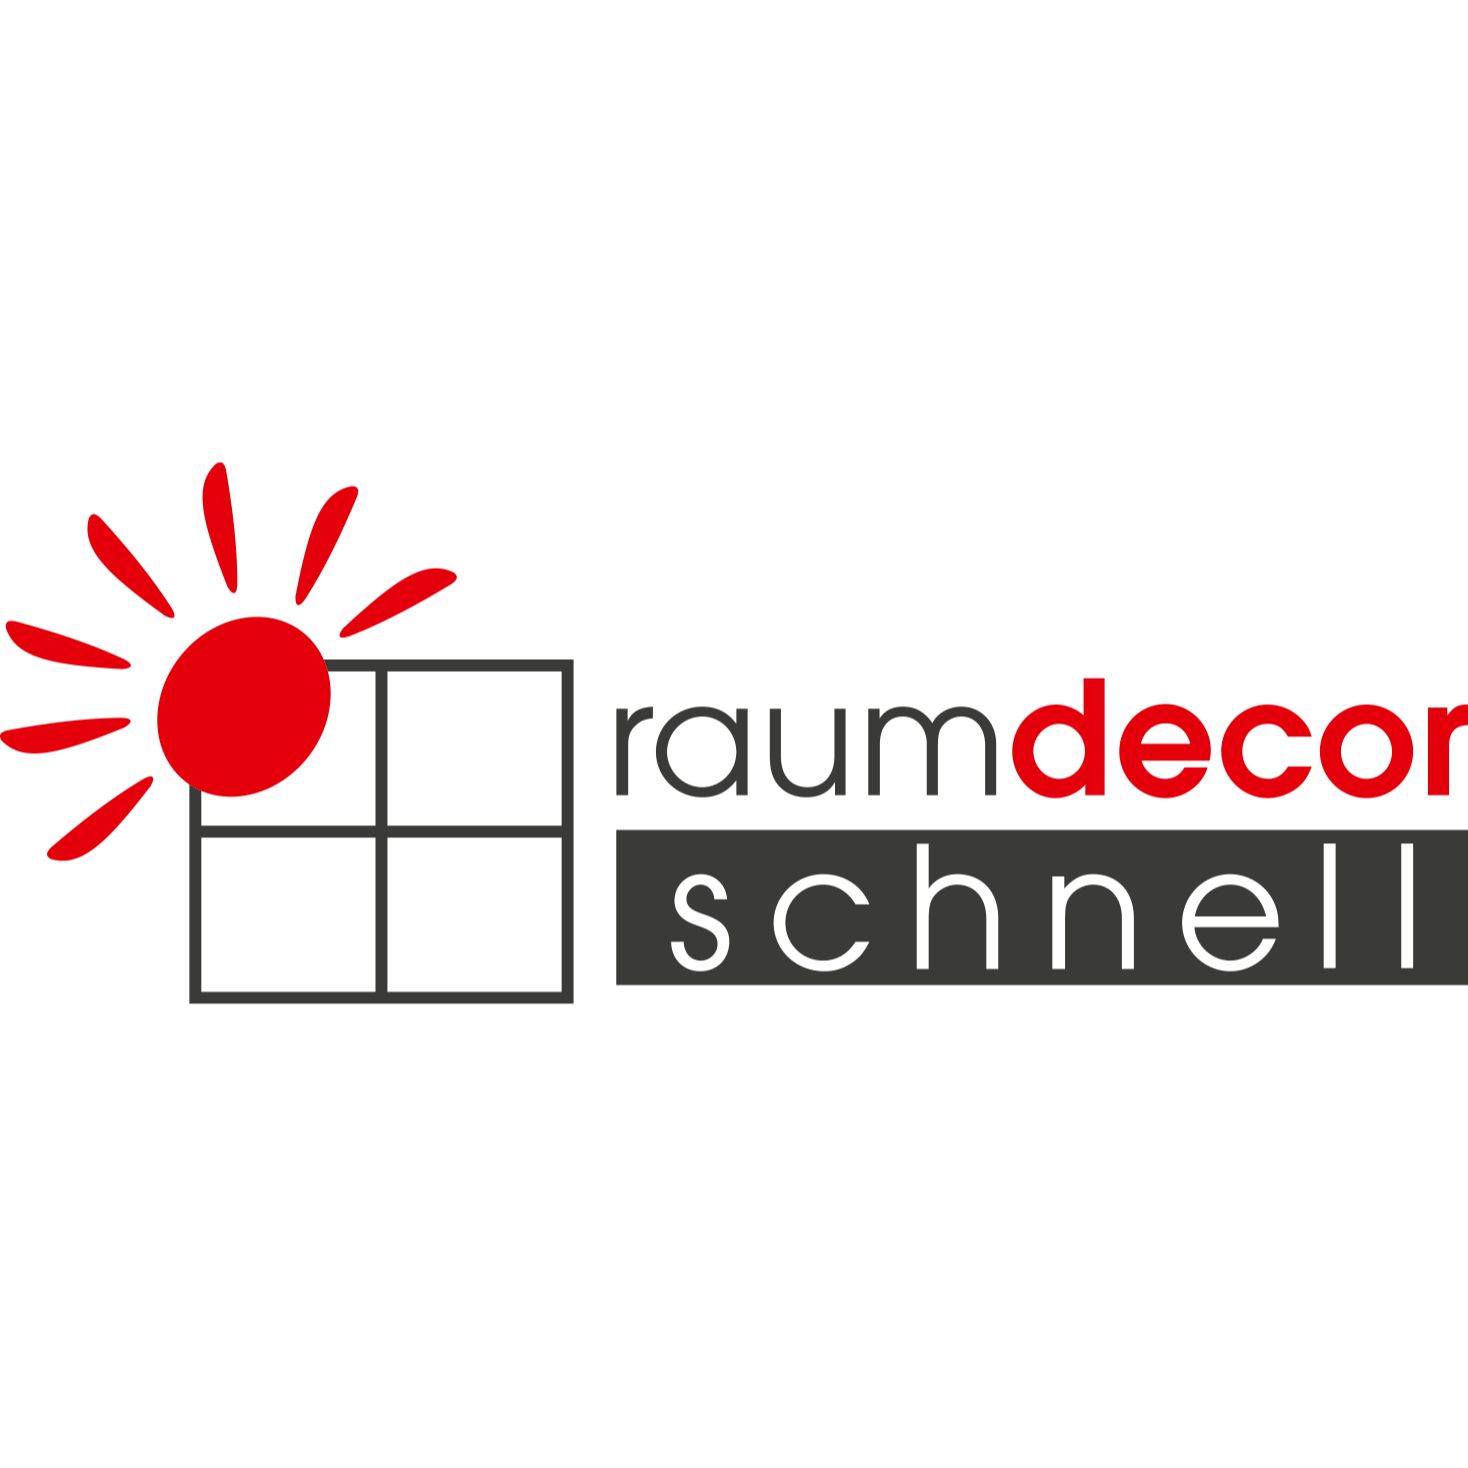 raumdecor Schnell GmbH & Co. KG in Bietigheim Bissingen - Logo